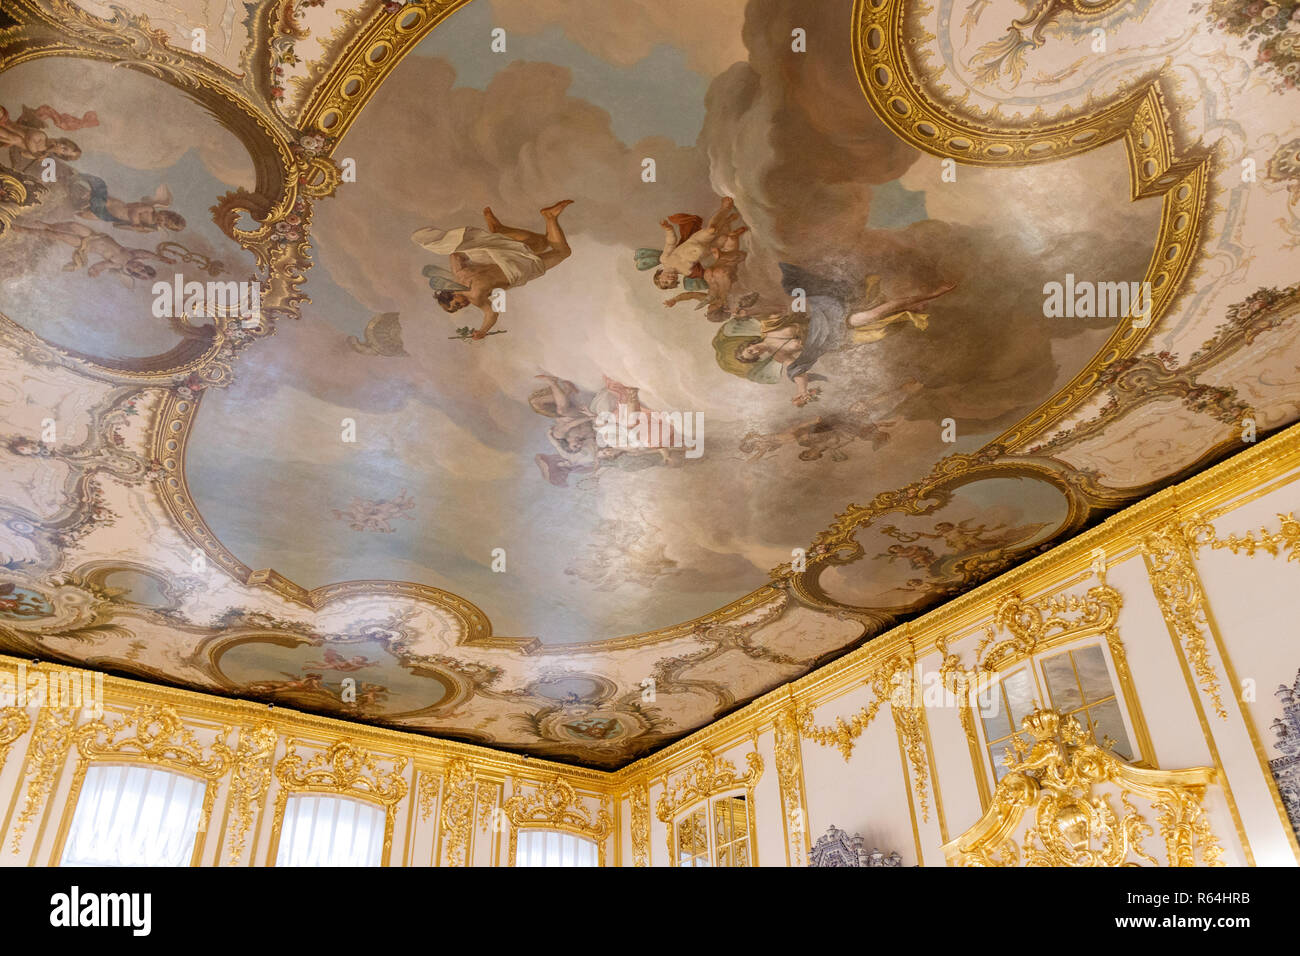 Teil einer bemalten Decke in der Catherine Palace, Zarskoje Selo, Sankt Petersburg. Russland Stockfoto